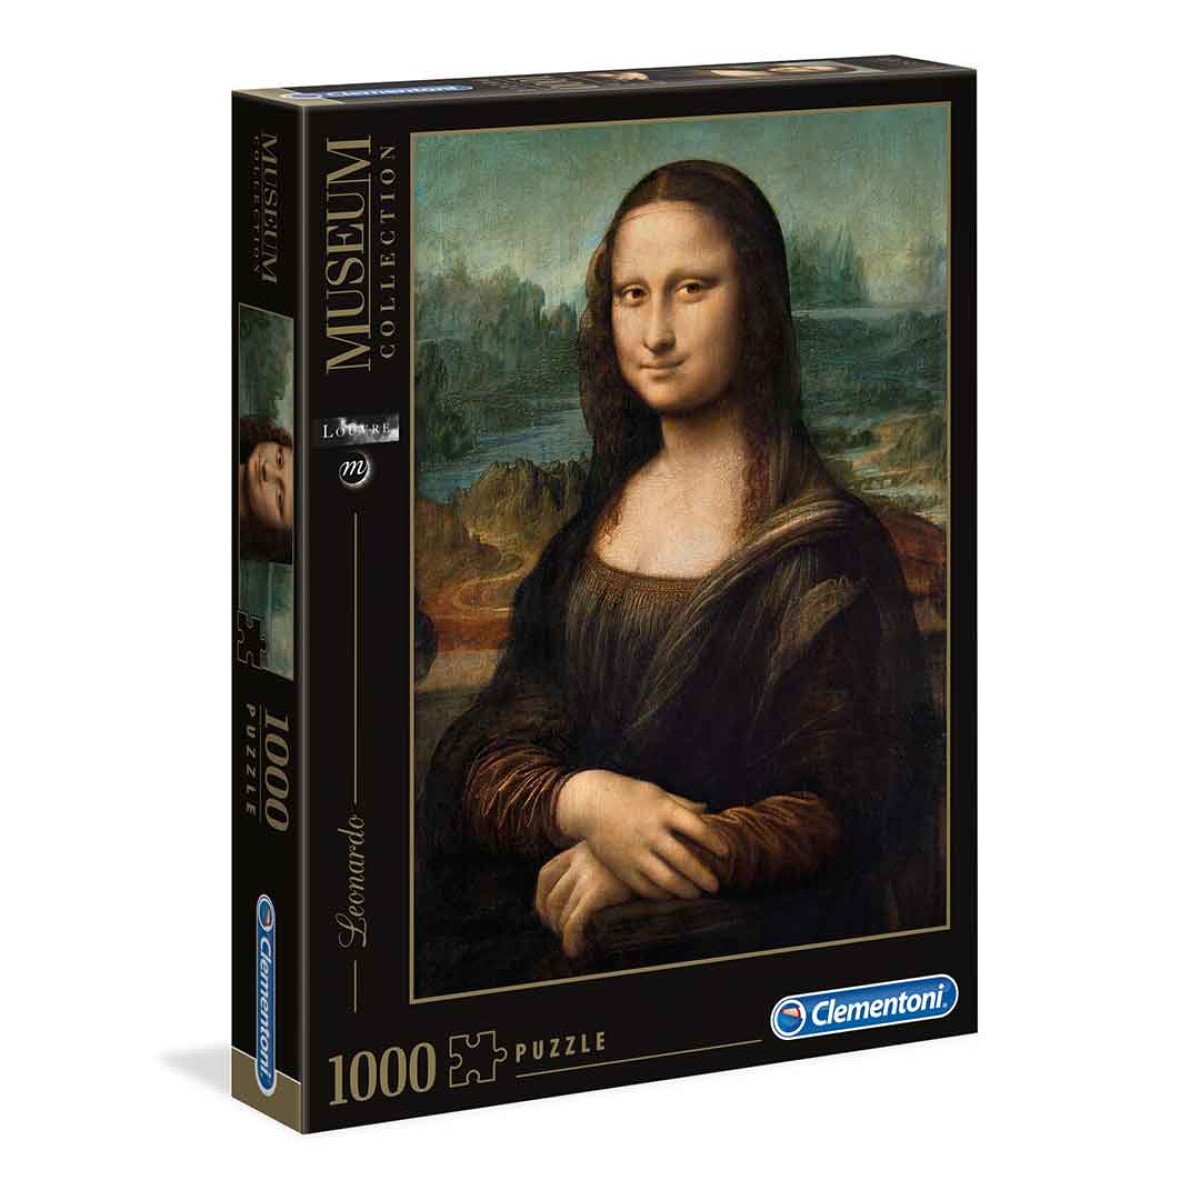 Puzzle Clementoni 1000 piezas Museum Gioconda Da Vinci - 001 